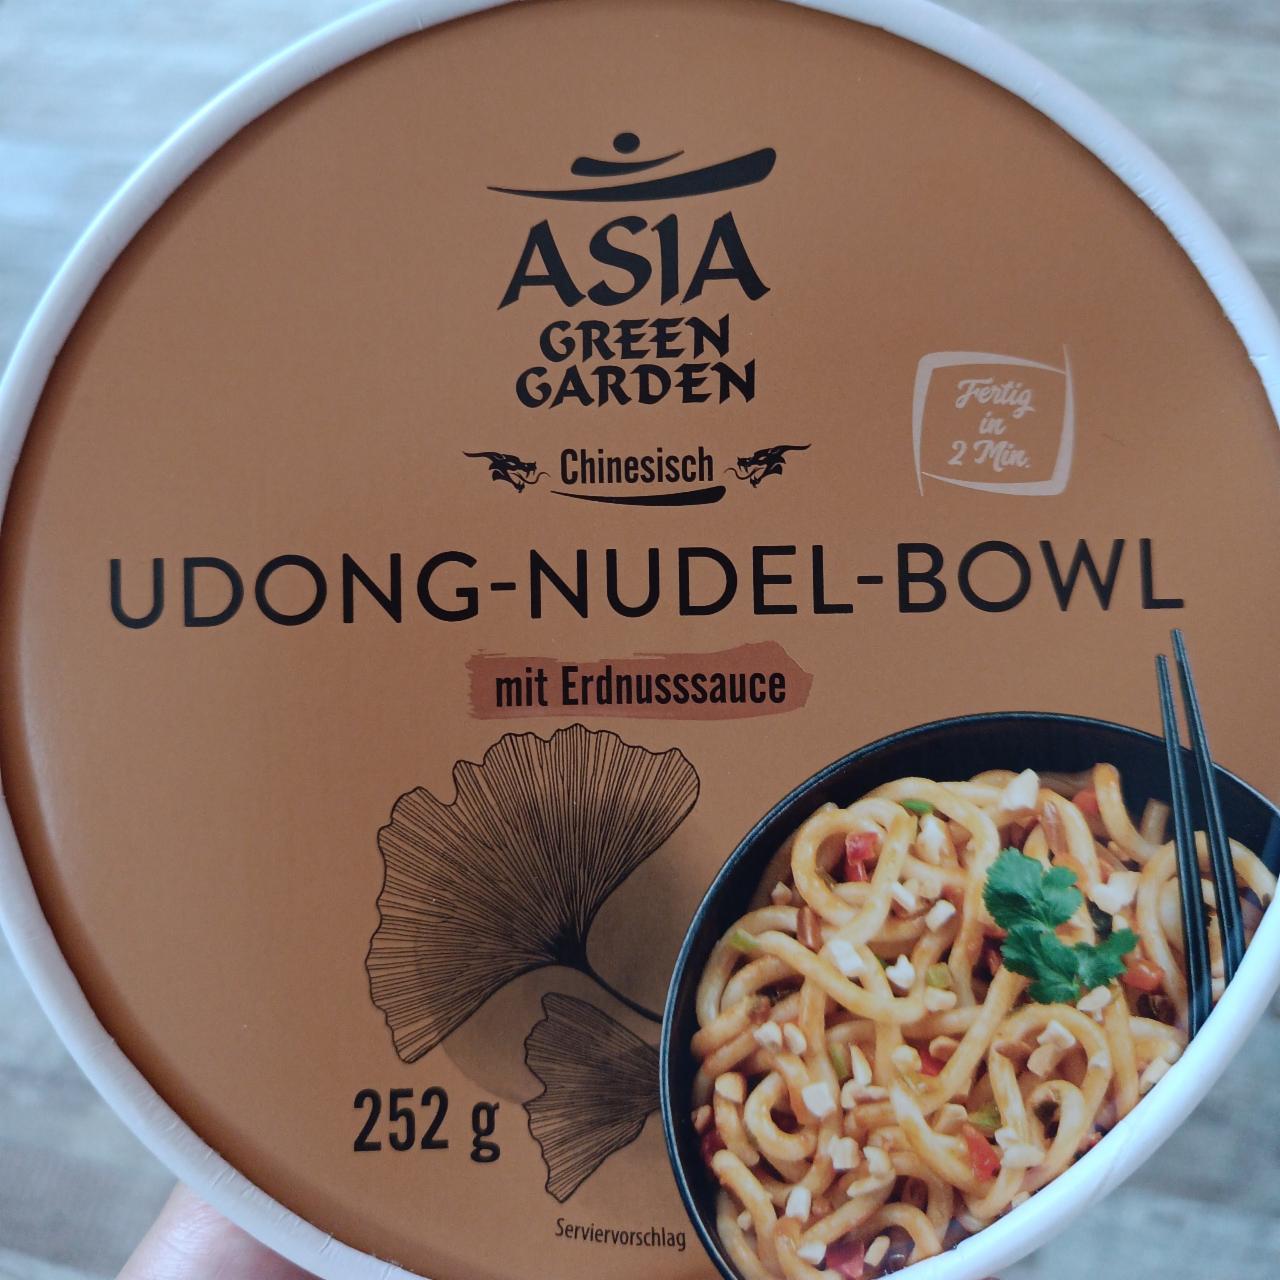 Fotografie - Udong-nudel-bowl mit Erdnusssauce Asia Green Garden